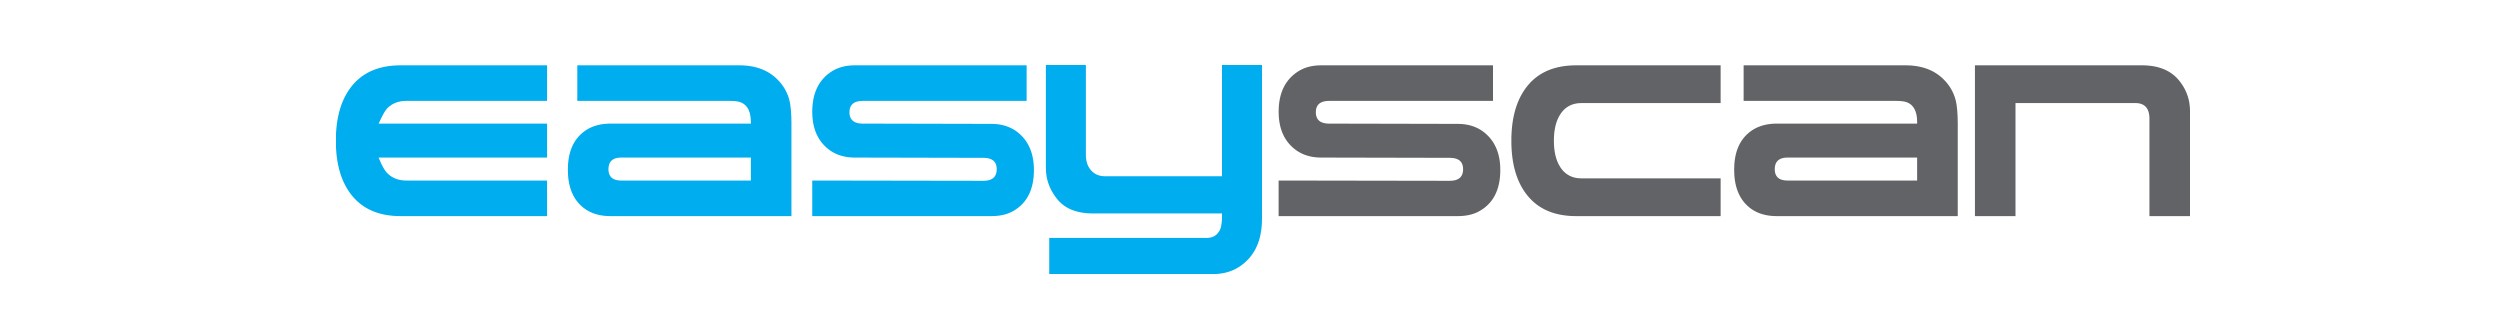 EasyScan logo